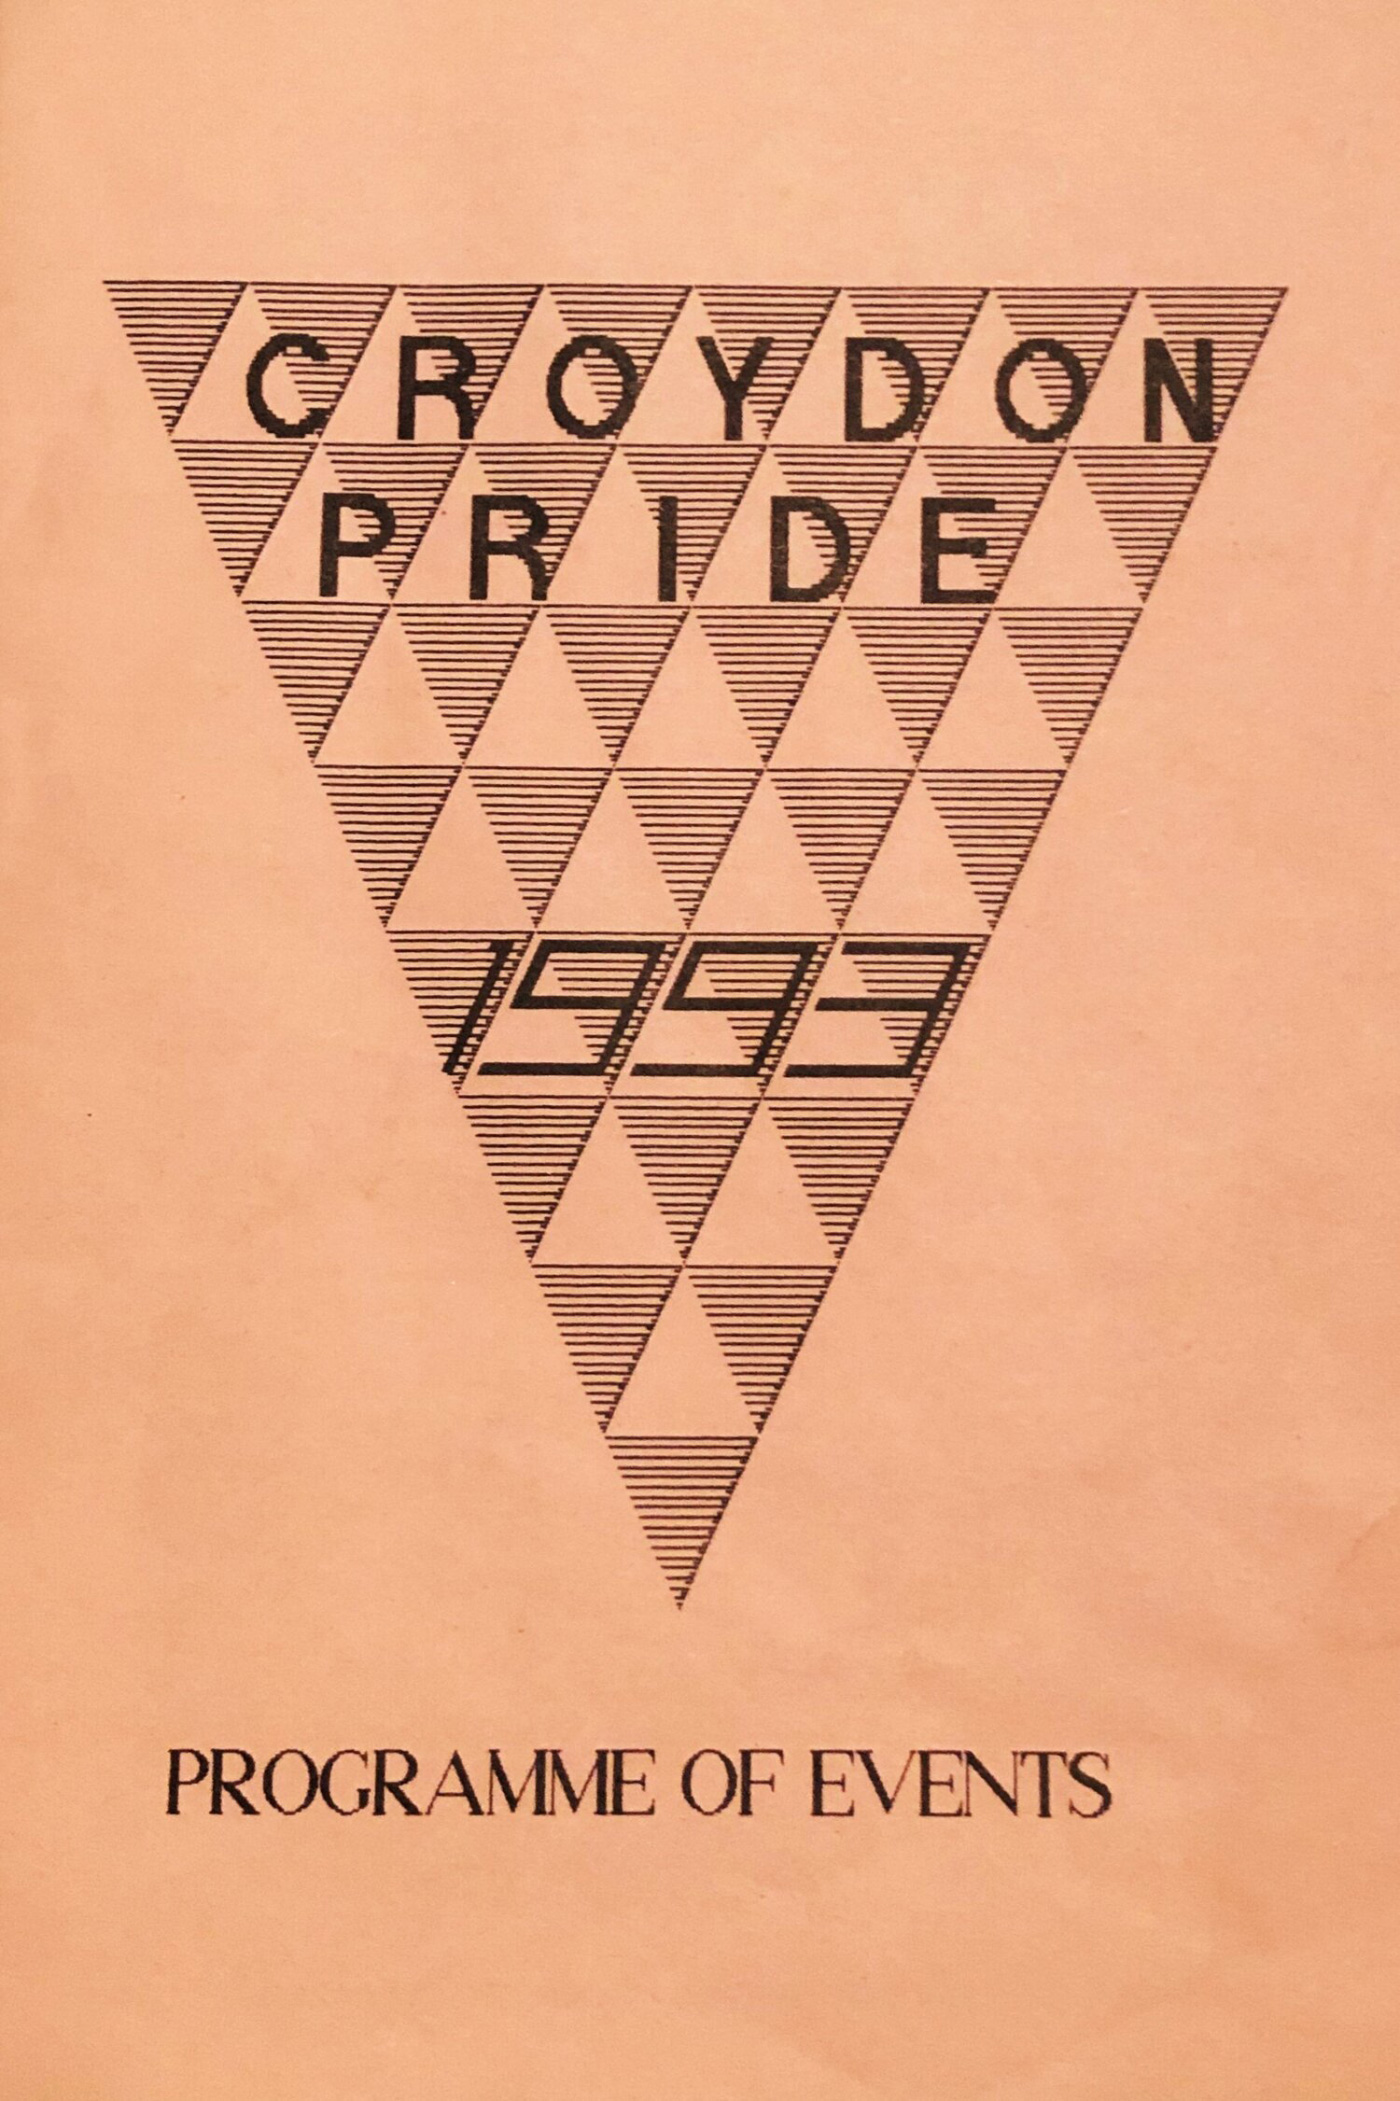 Queer + Croydon exhibition